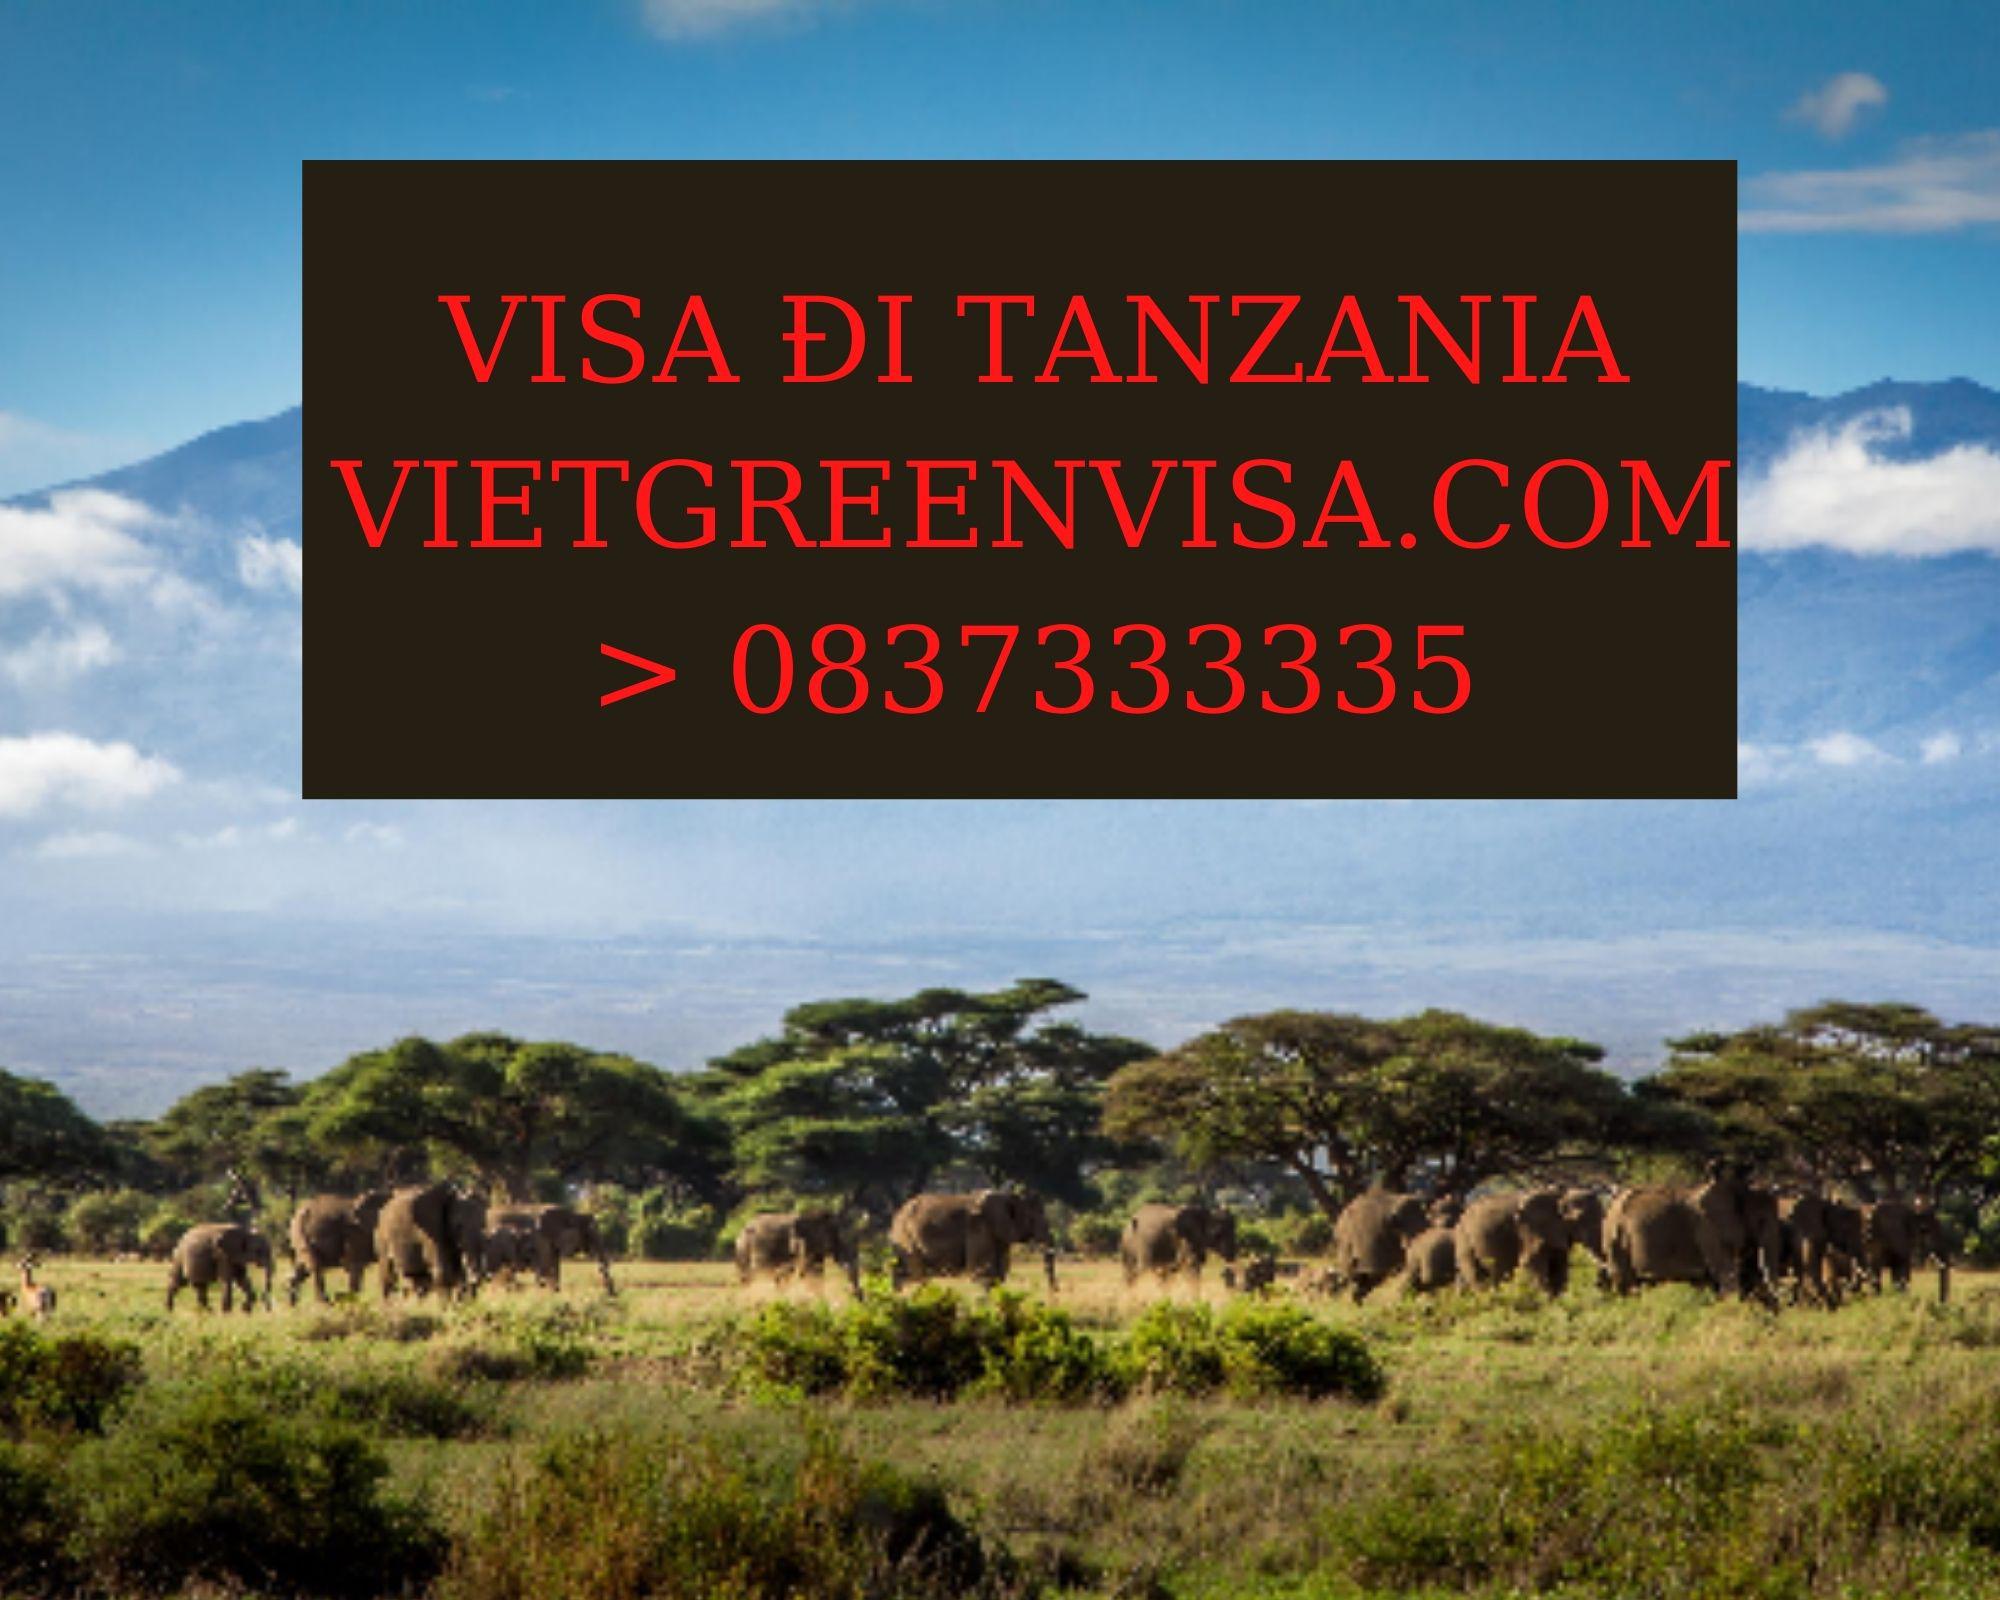 Làm Visa du lịch Tanzania uy tín, trọn gói